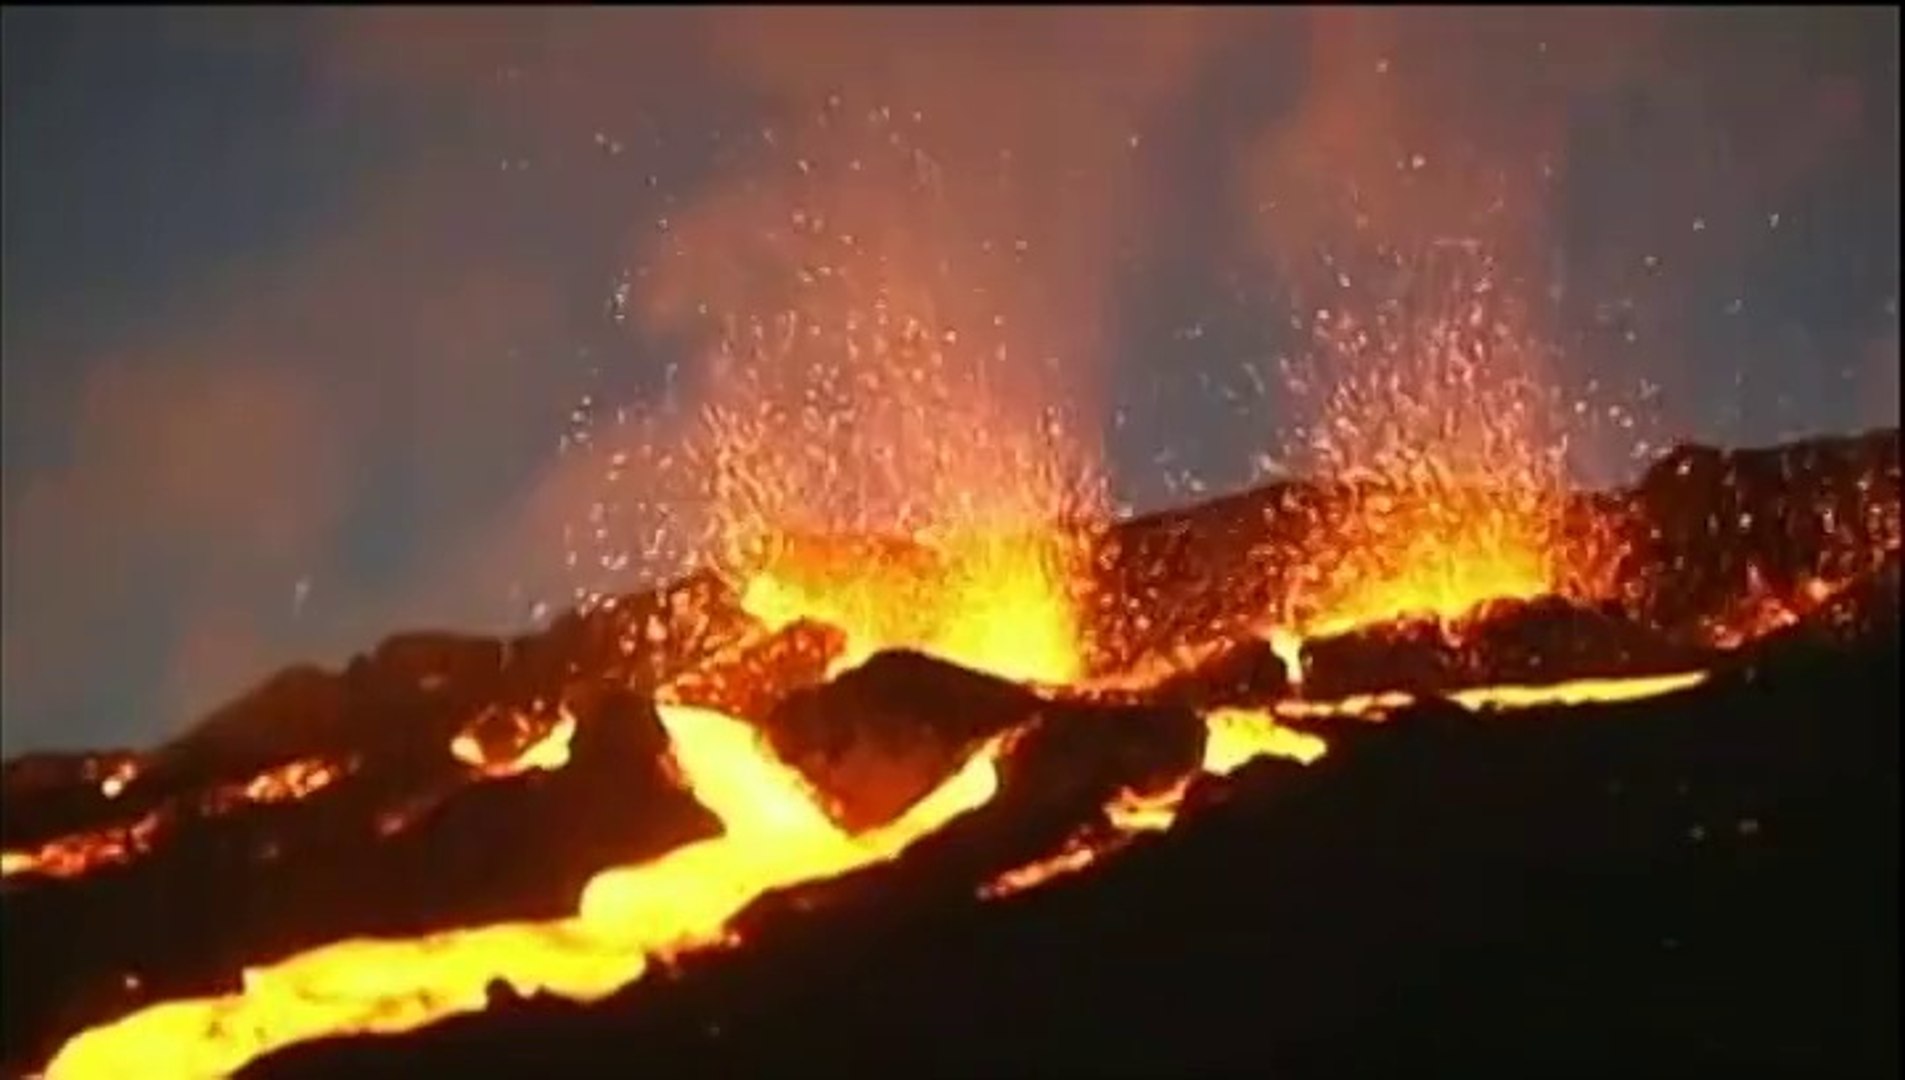 Réunion : le volcan du Piton de la Fournaise en éruption - Vidéo Dailymotion